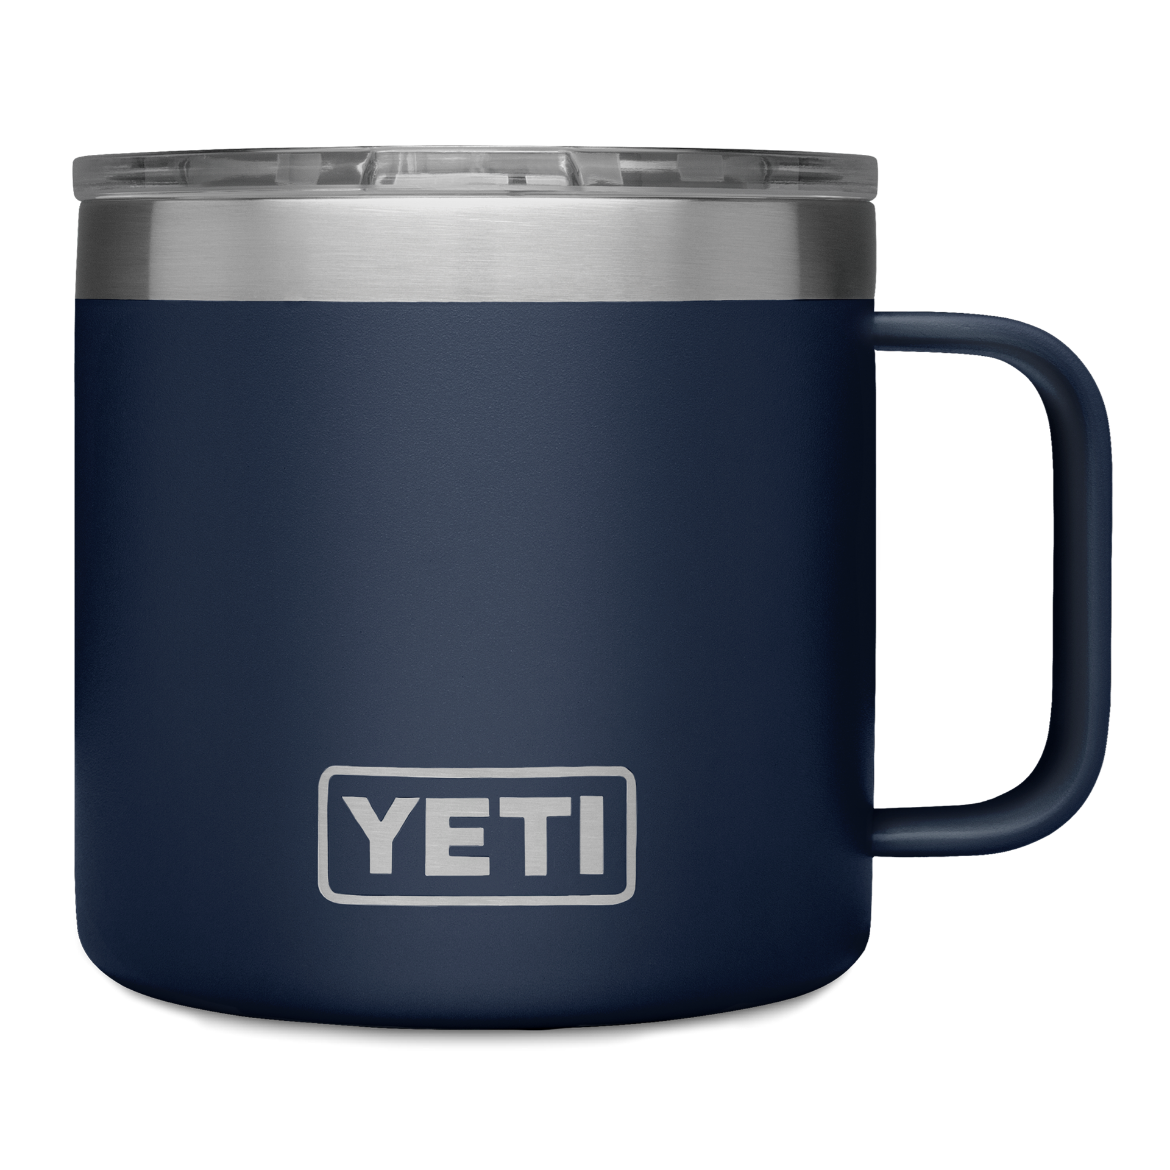 Picture of Yeti Rambler 14 oz Mug